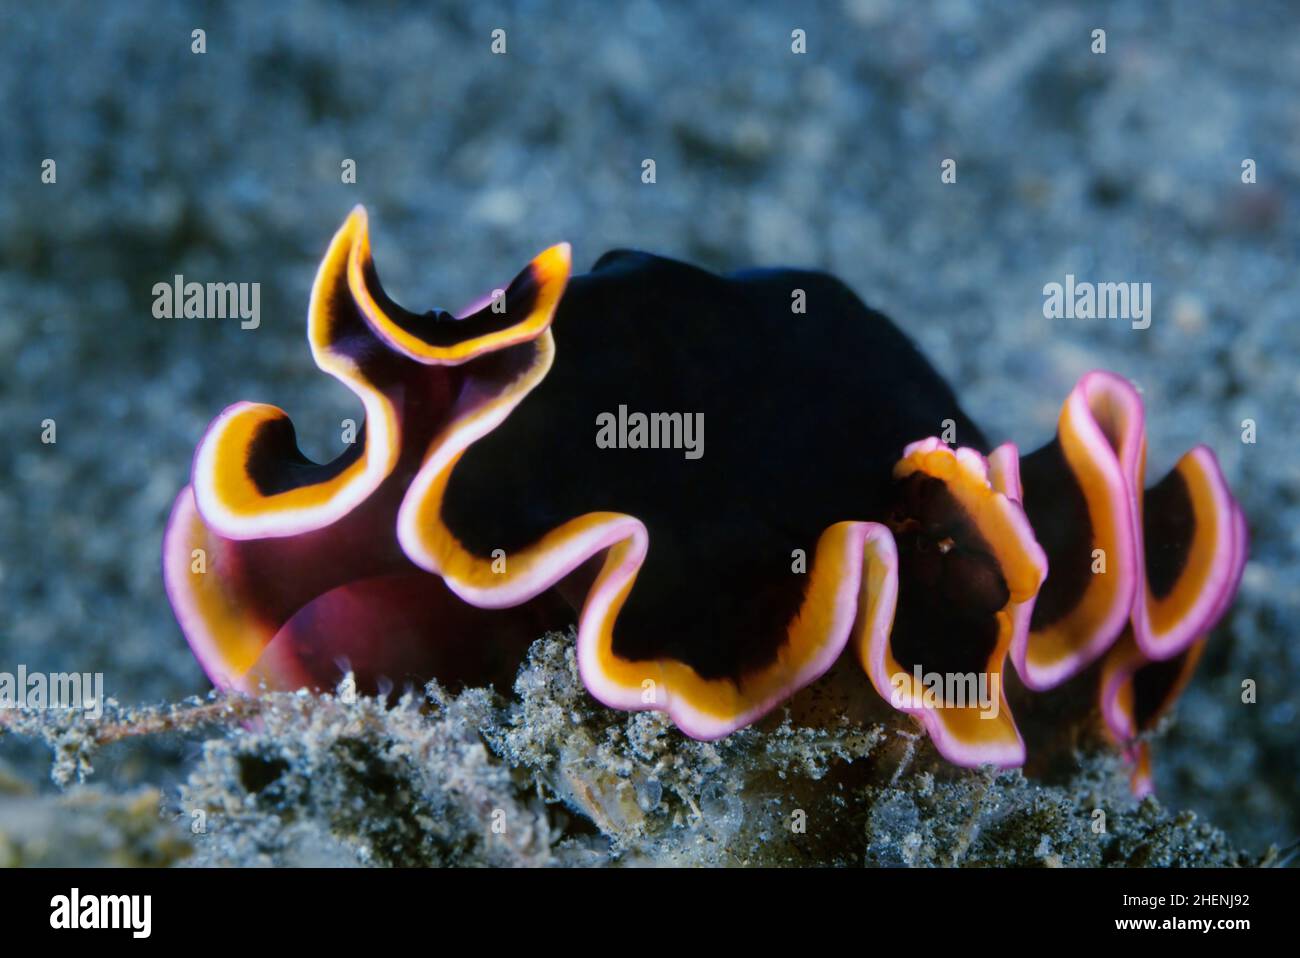 Pseudobiceros gloriosus (common name: the glorious flatworm) Stock Photo